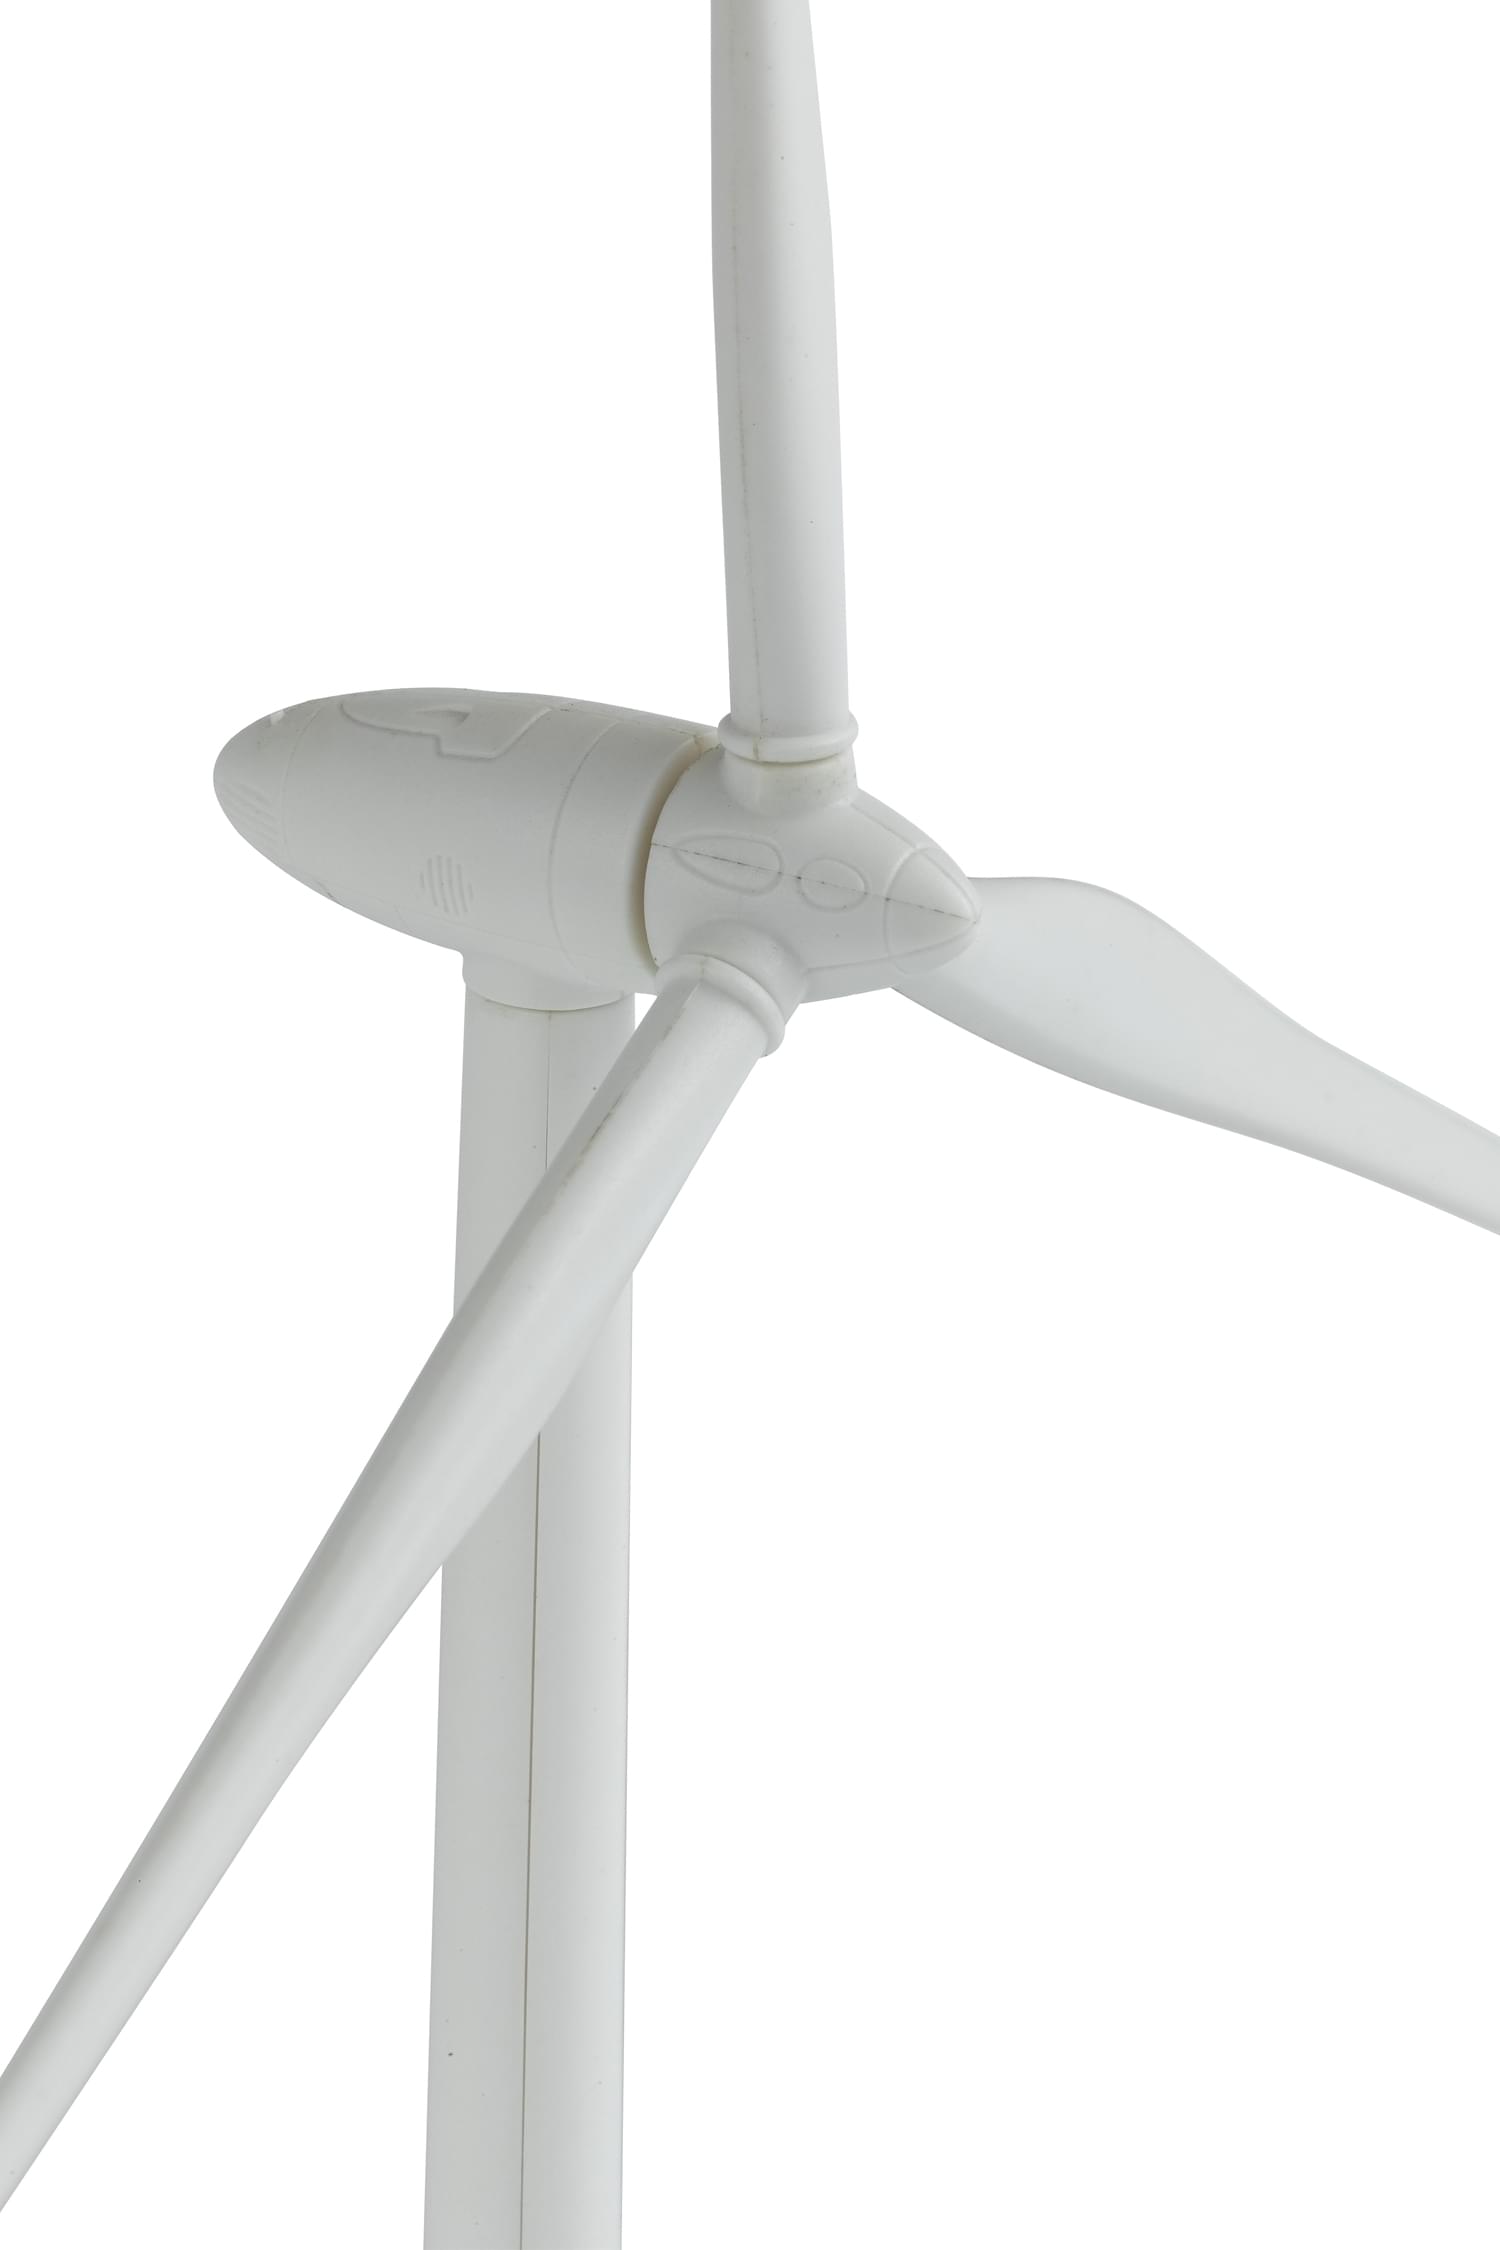 塑料风力发电机模型